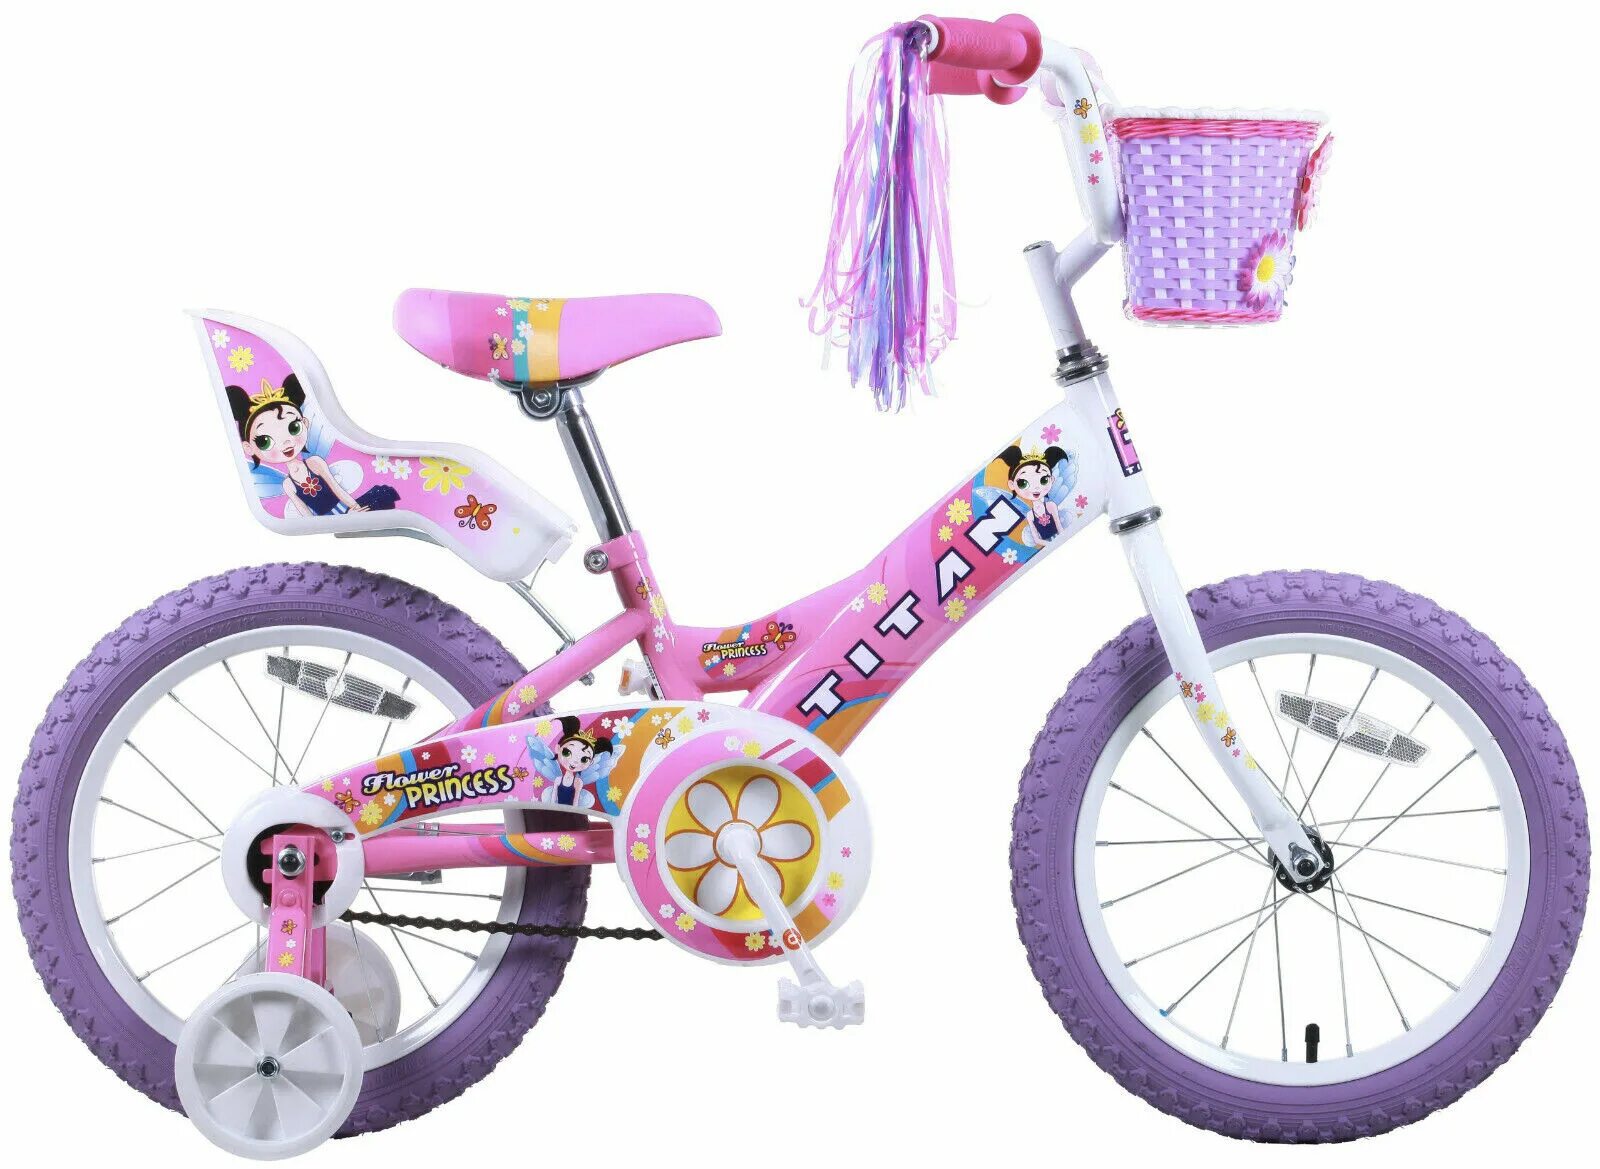 Какой велосипед выбрать для девочки. Велосипед Black Aqua Princess 16"; 1s (розово-сиреневый). 16" Велосипед Belle розовый ksb160p. Велосипед Kids принцесса 16. Lanq Princess 16 велосипед.